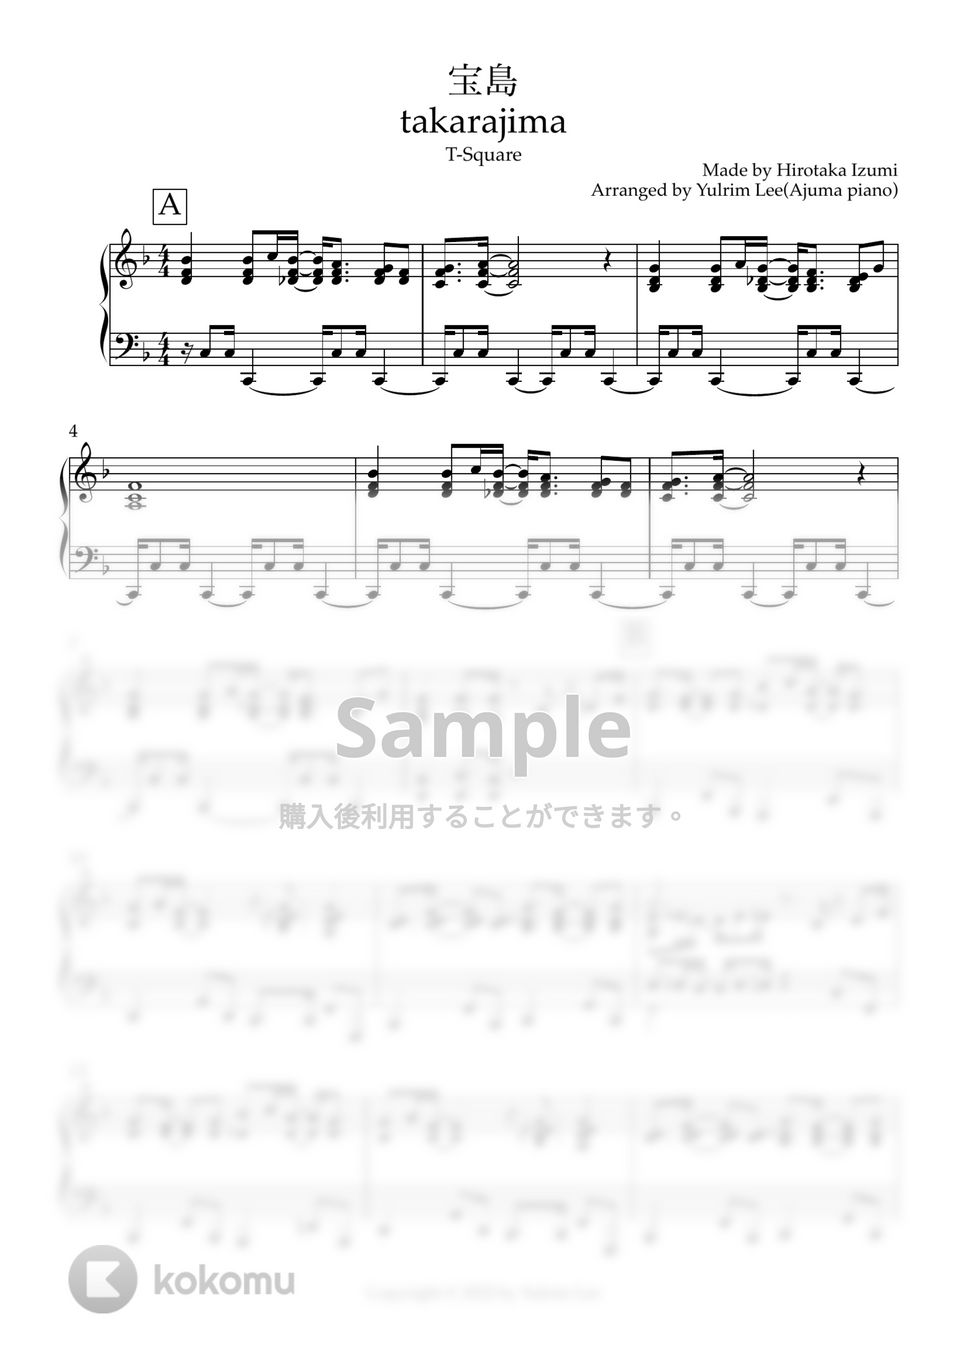 和泉宏隆(T-Square) - 宝島 (ピアノソロ) by Ajuma Piano